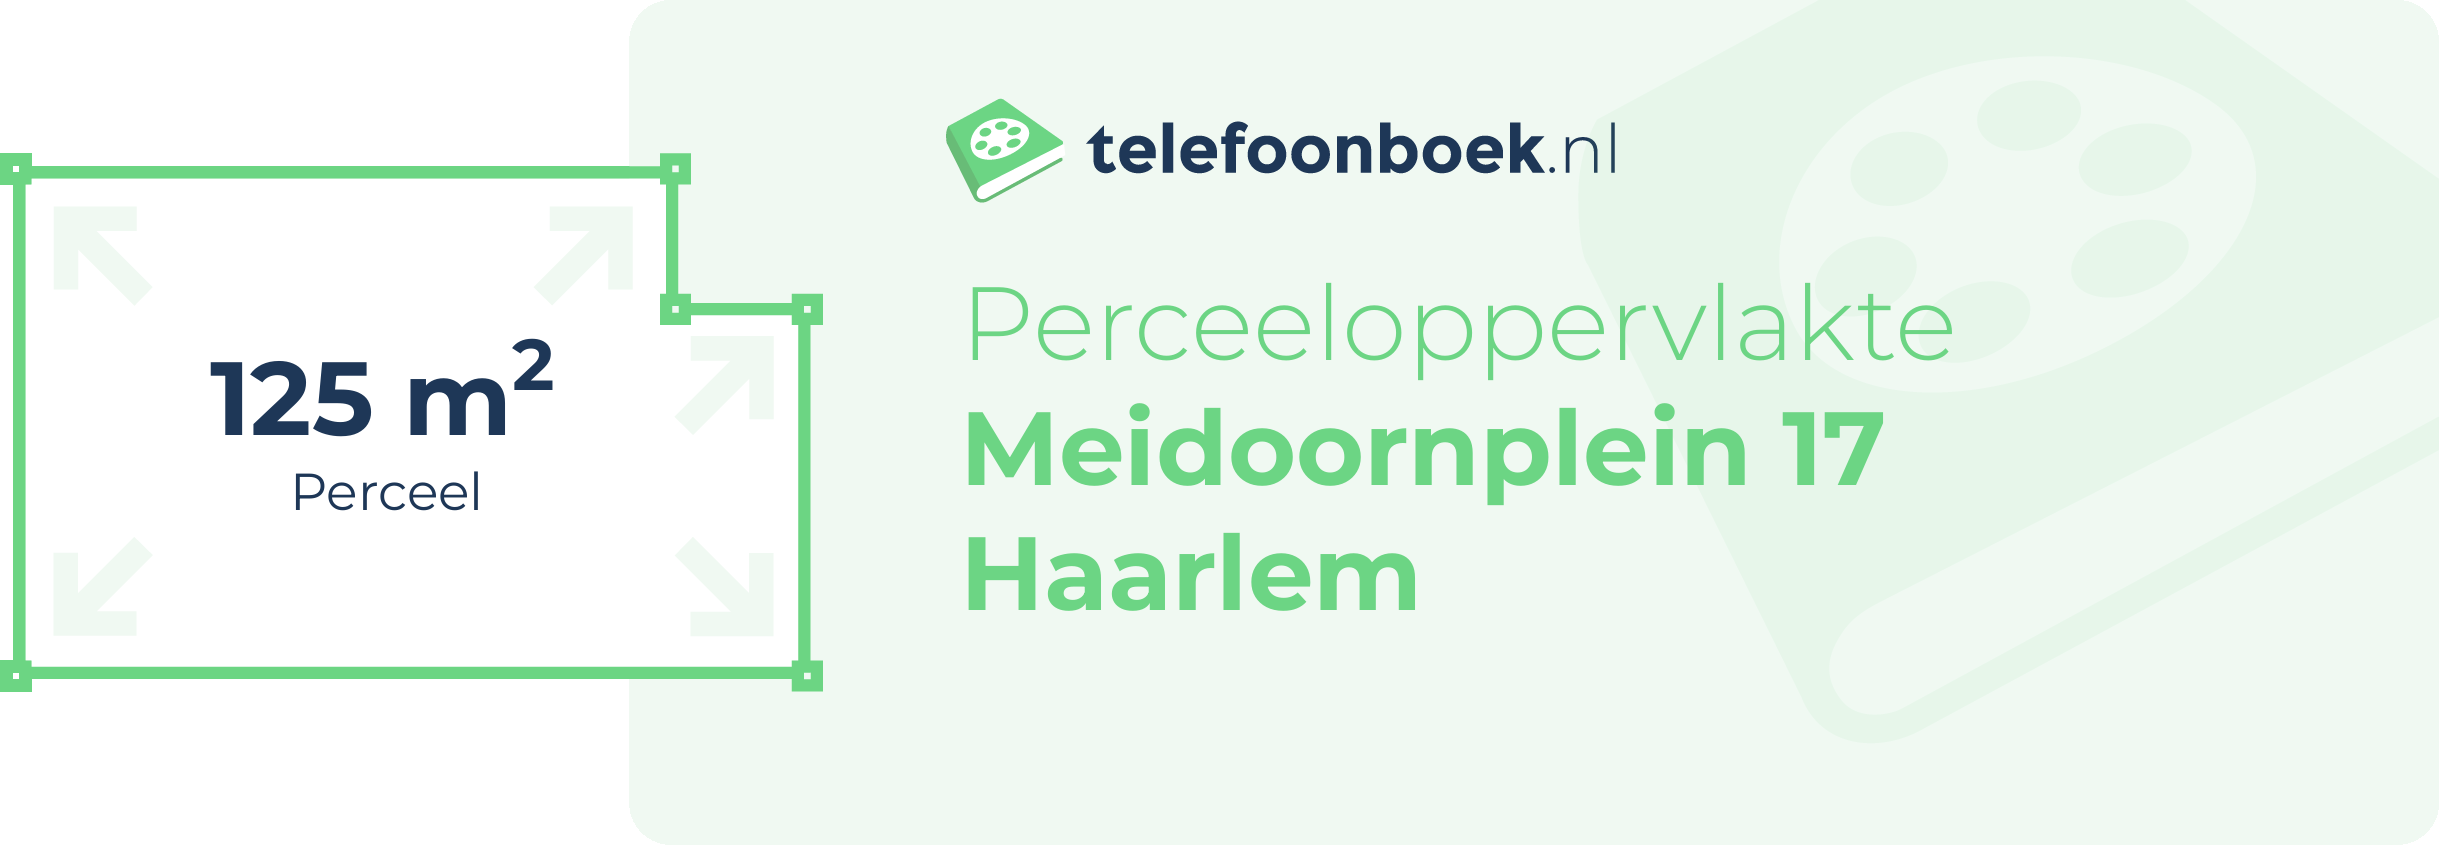 Perceeloppervlakte Meidoornplein 17 Haarlem